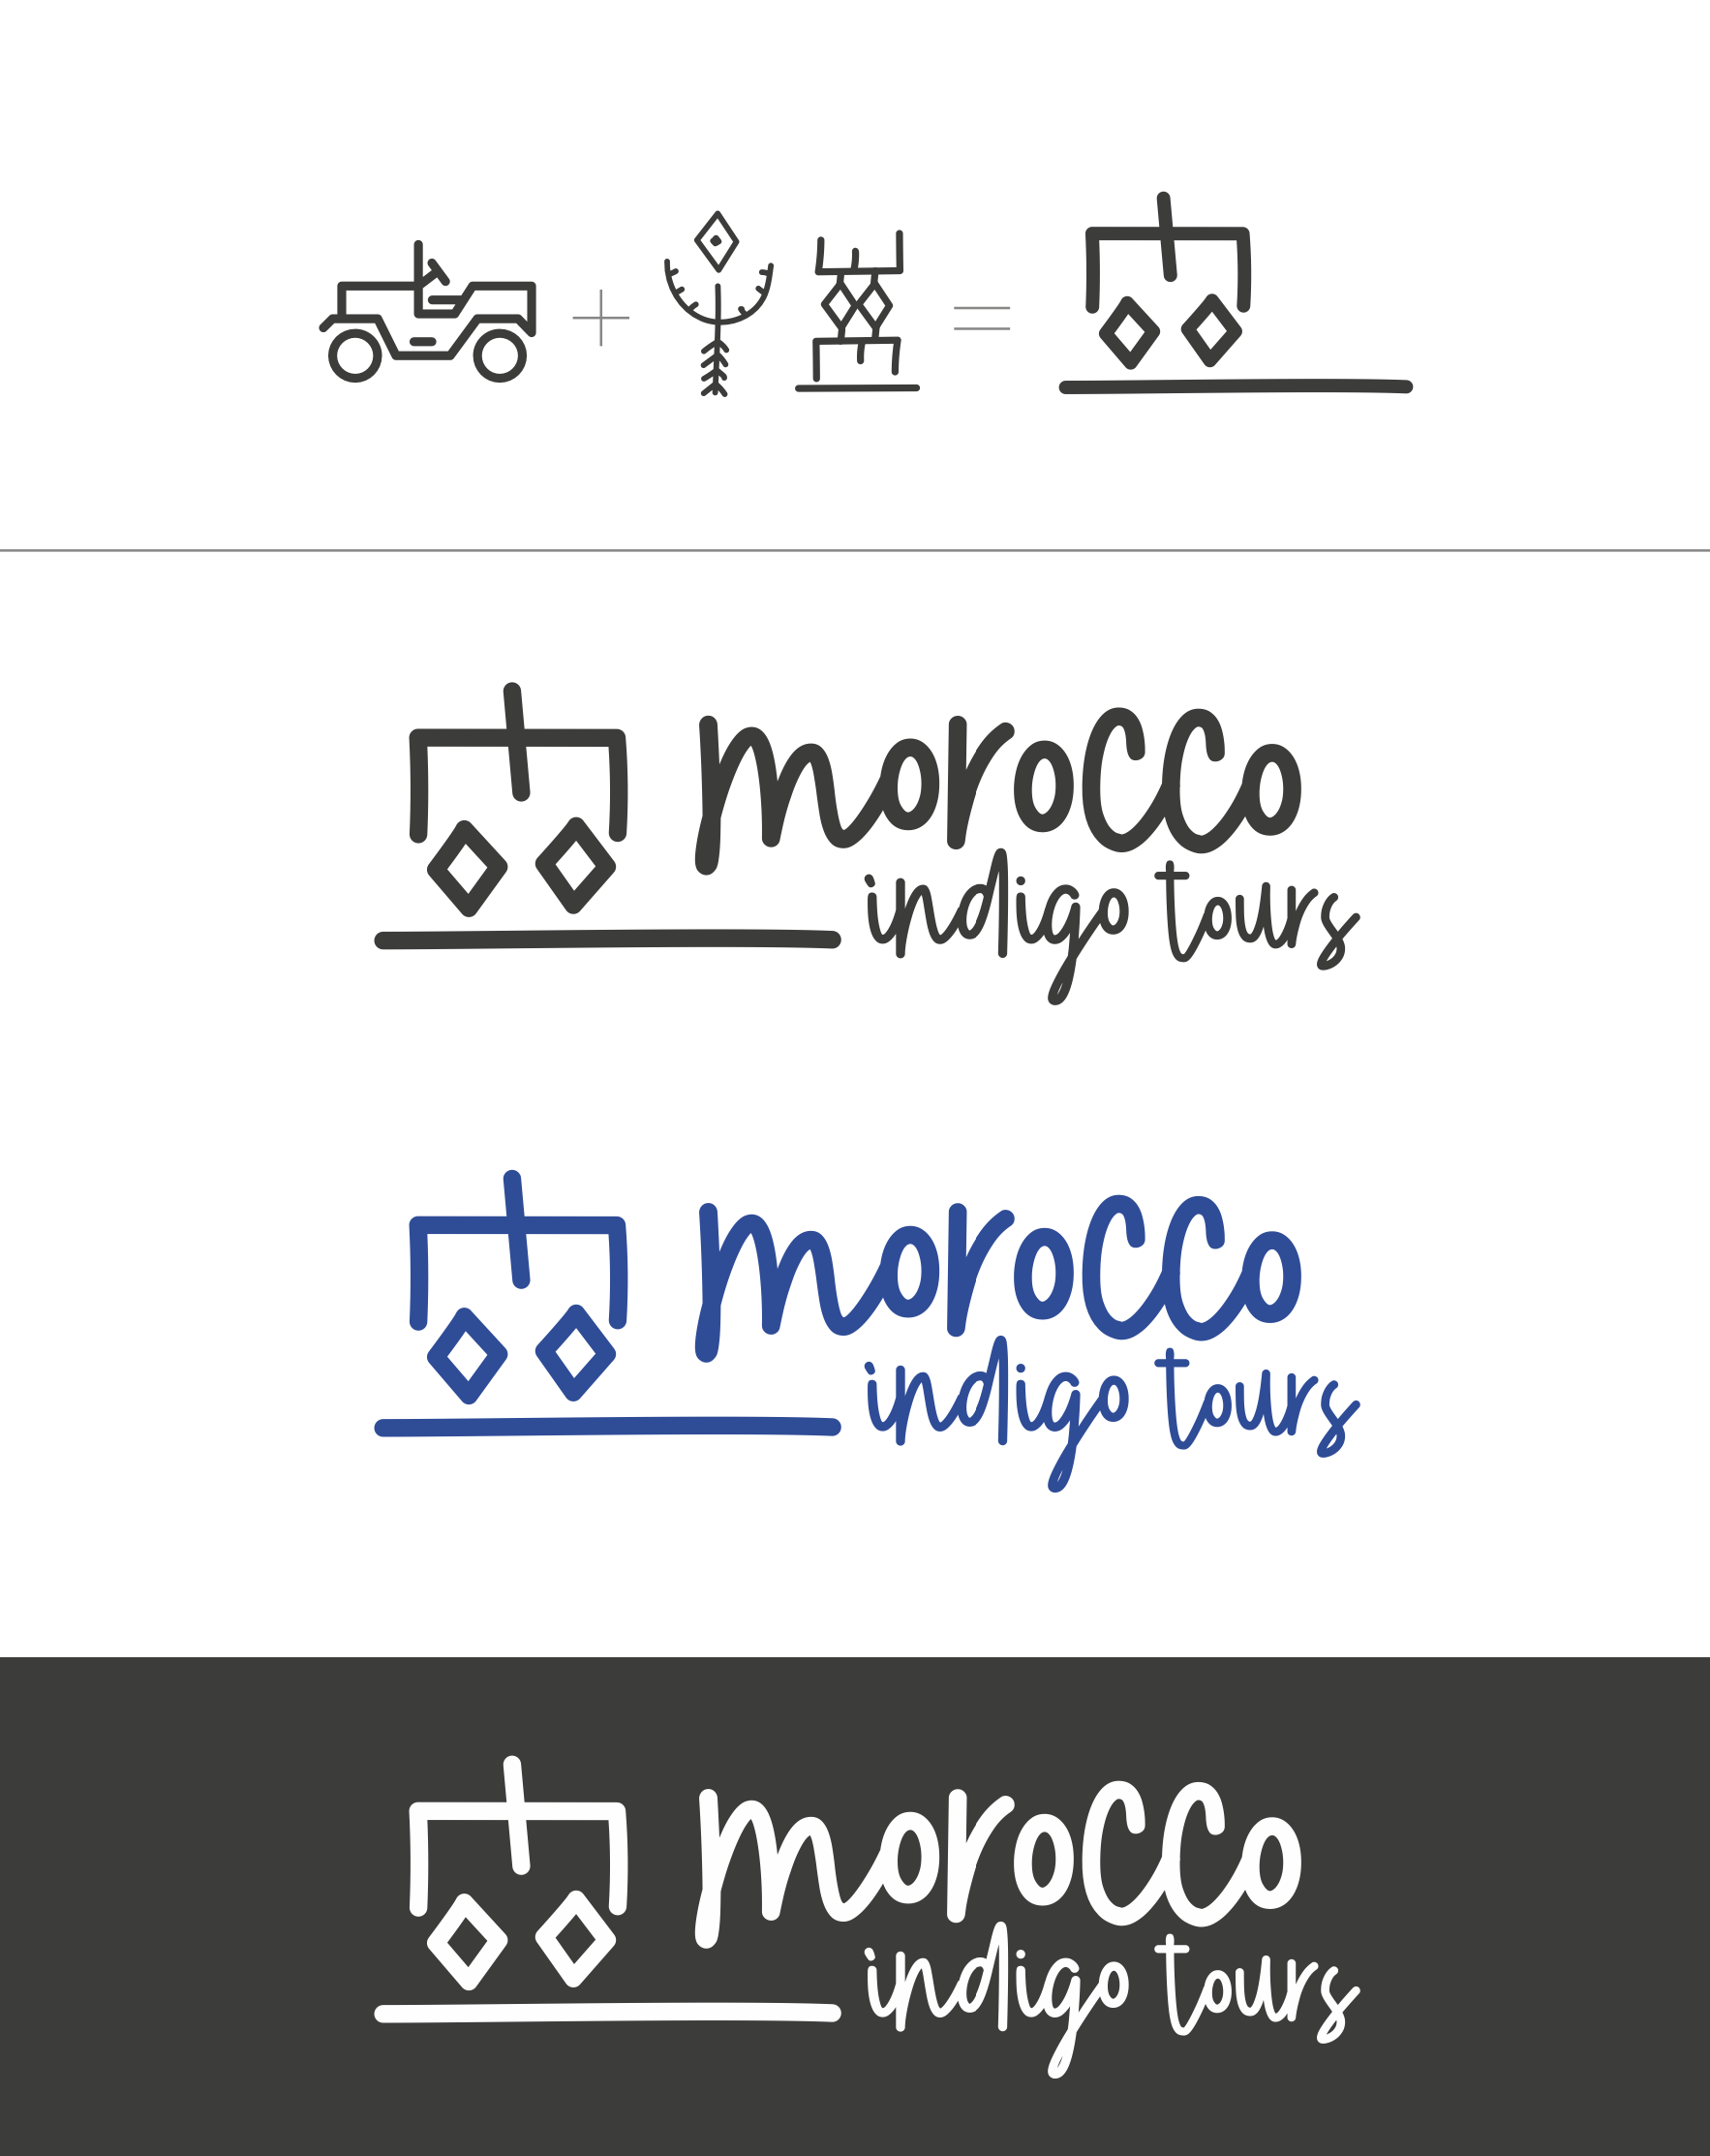 Branding agencia de viajes Indigo Morocco Tours